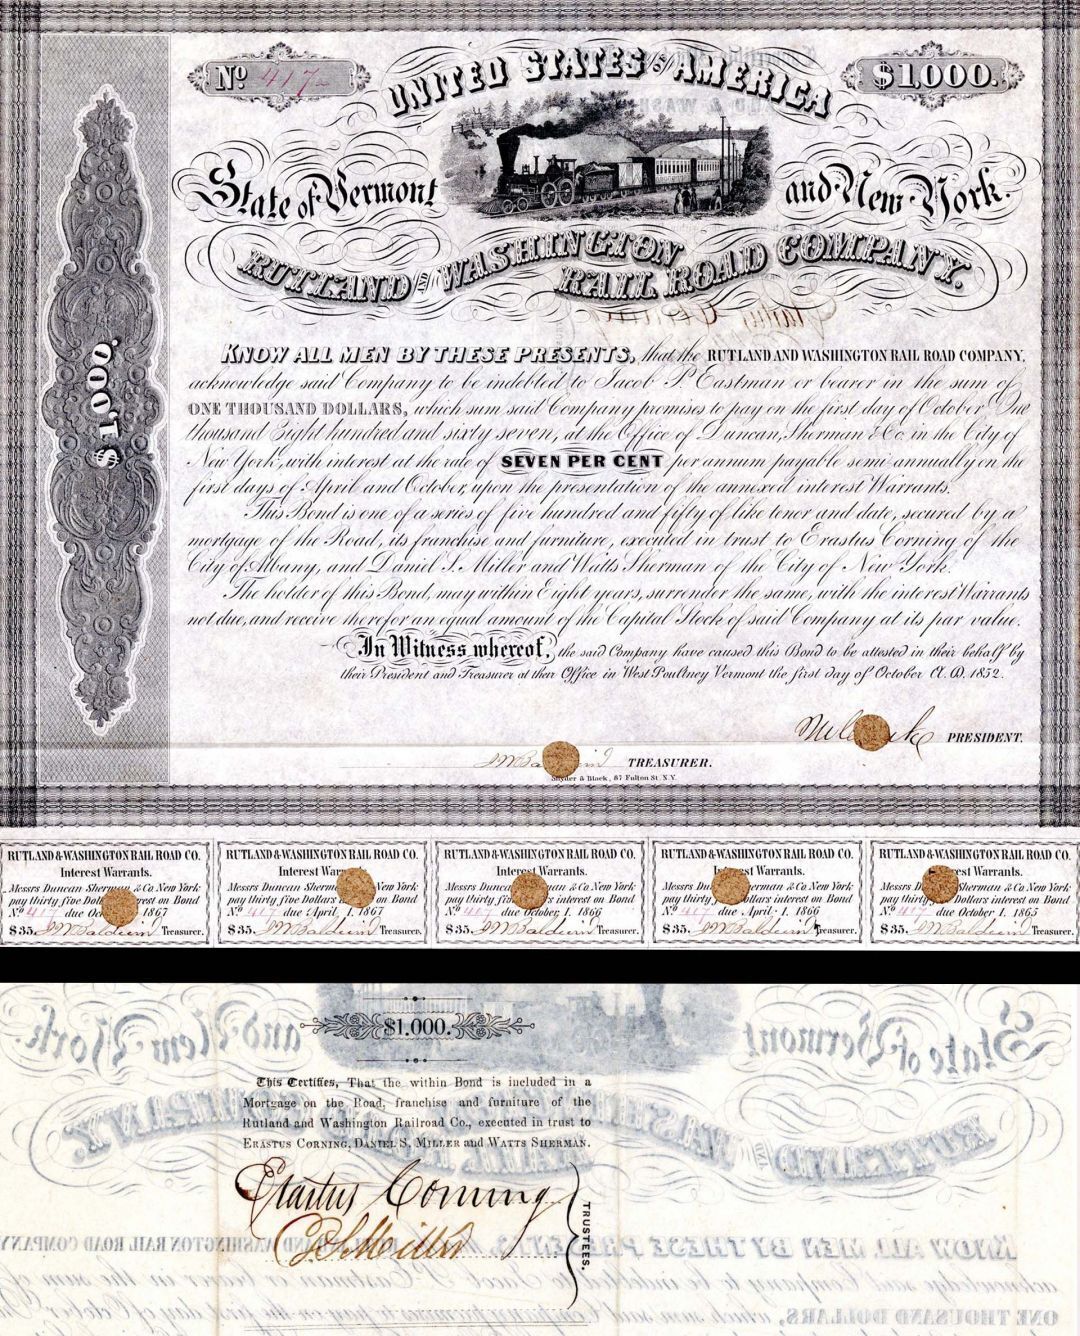 Rutland and Washington Railroad Co $1,000 Bond signed by Erastus Corning - Autog